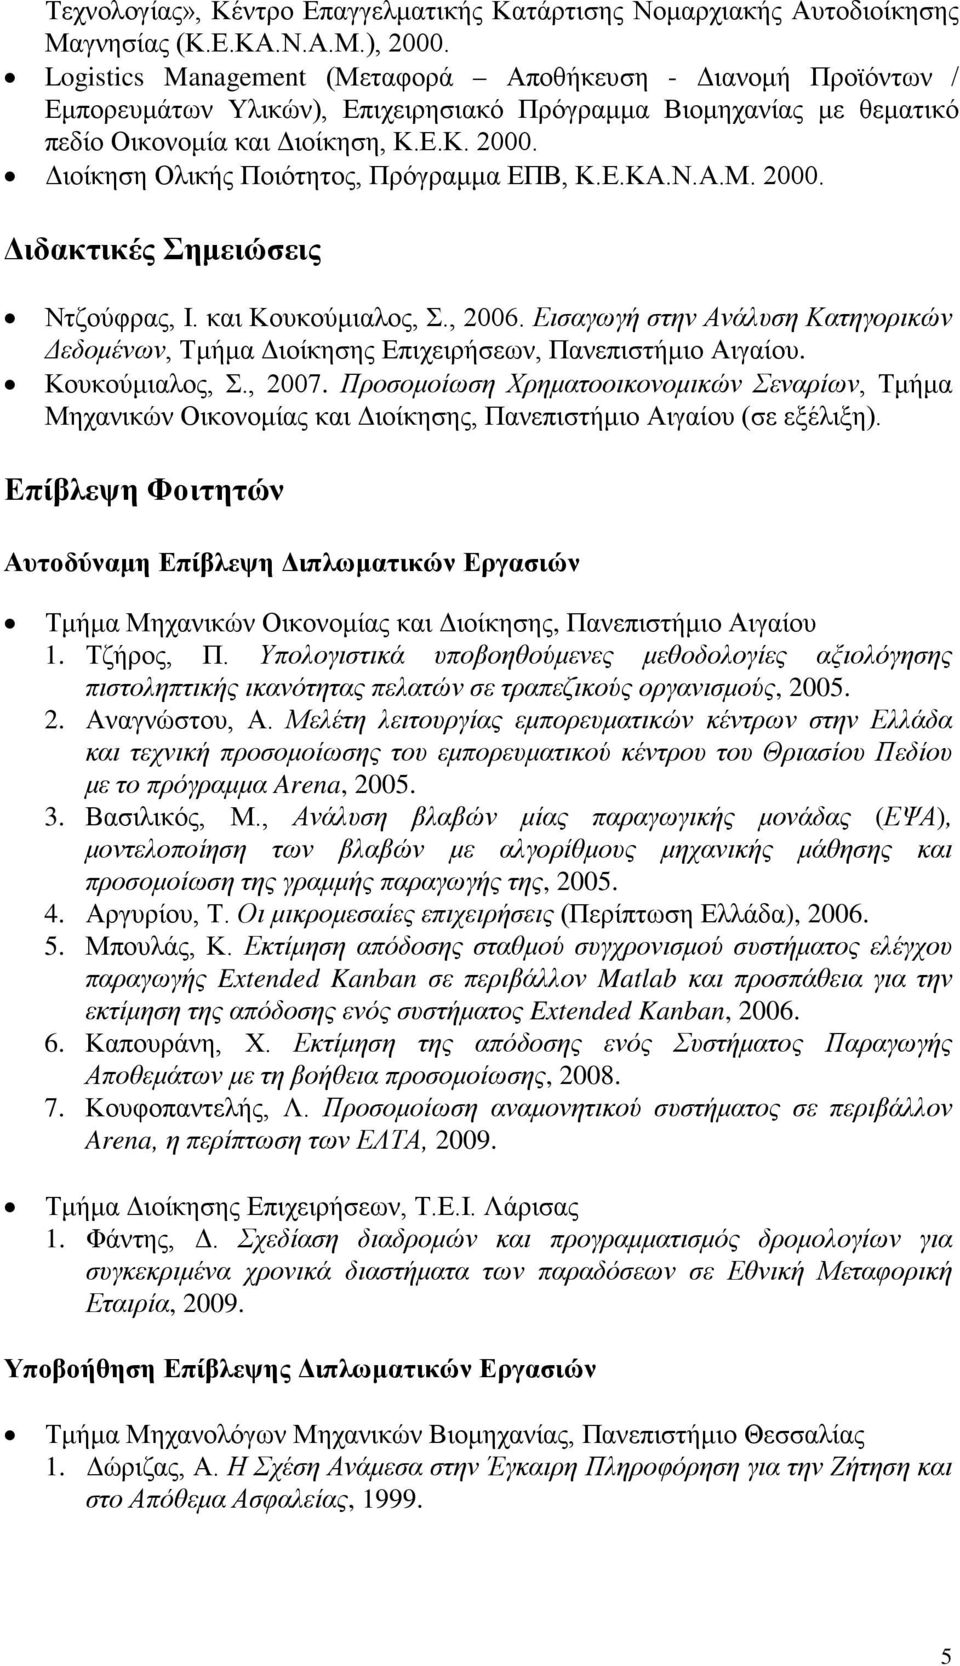 Διοίκηση Ολικής Ποιότητος, Πρόγραμμα ΕΠΒ, Κ.Ε.ΚΑ.Ν.Α.Μ. 2000. Διδακτικές Σημειώσεις Ντζούφρας, Ι. και Κουκούμιαλος, Σ., 2006.